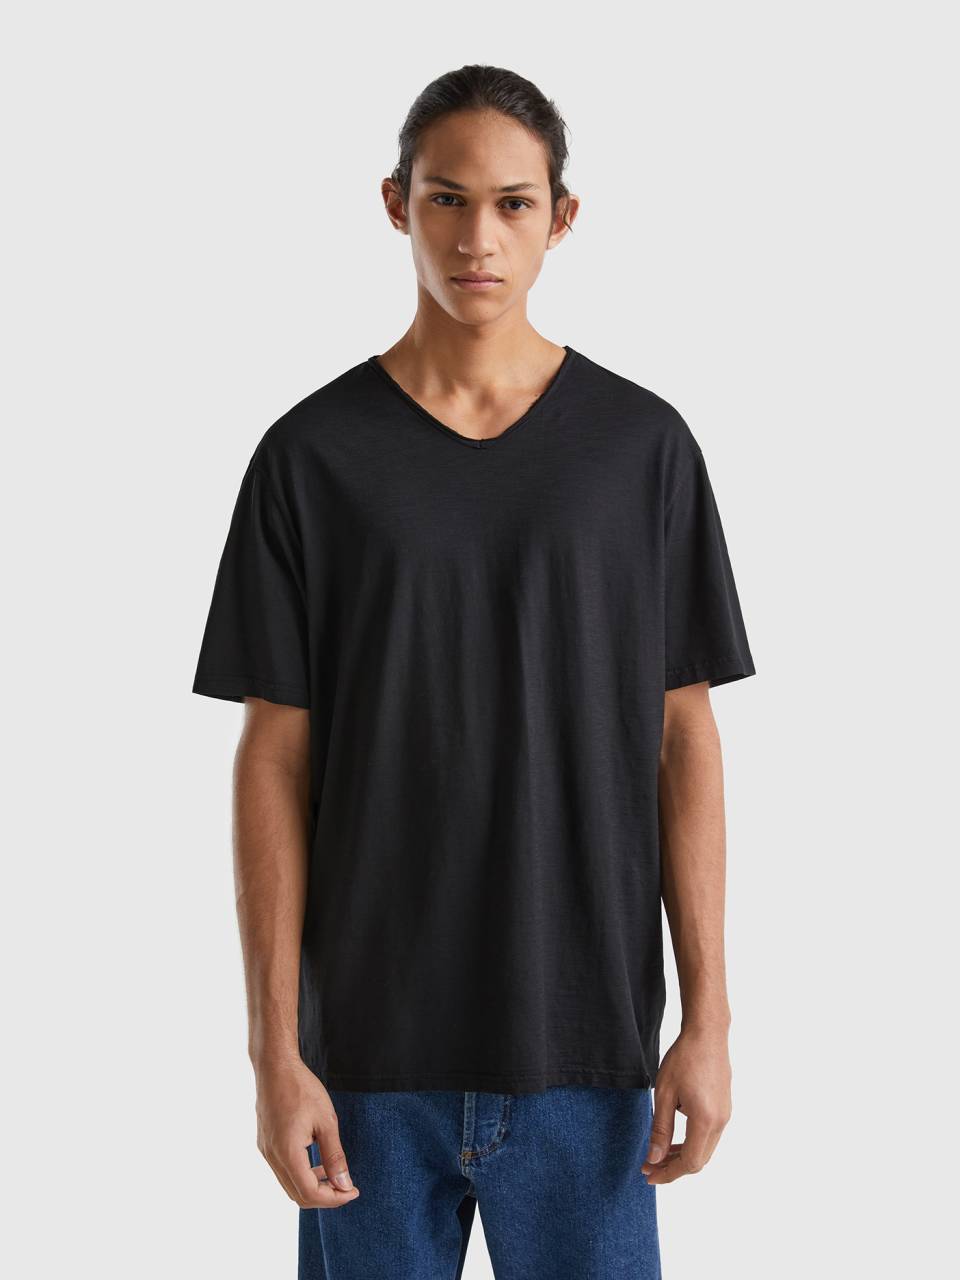 Black t-shirt cotton V-neck in - | Benetton 100%